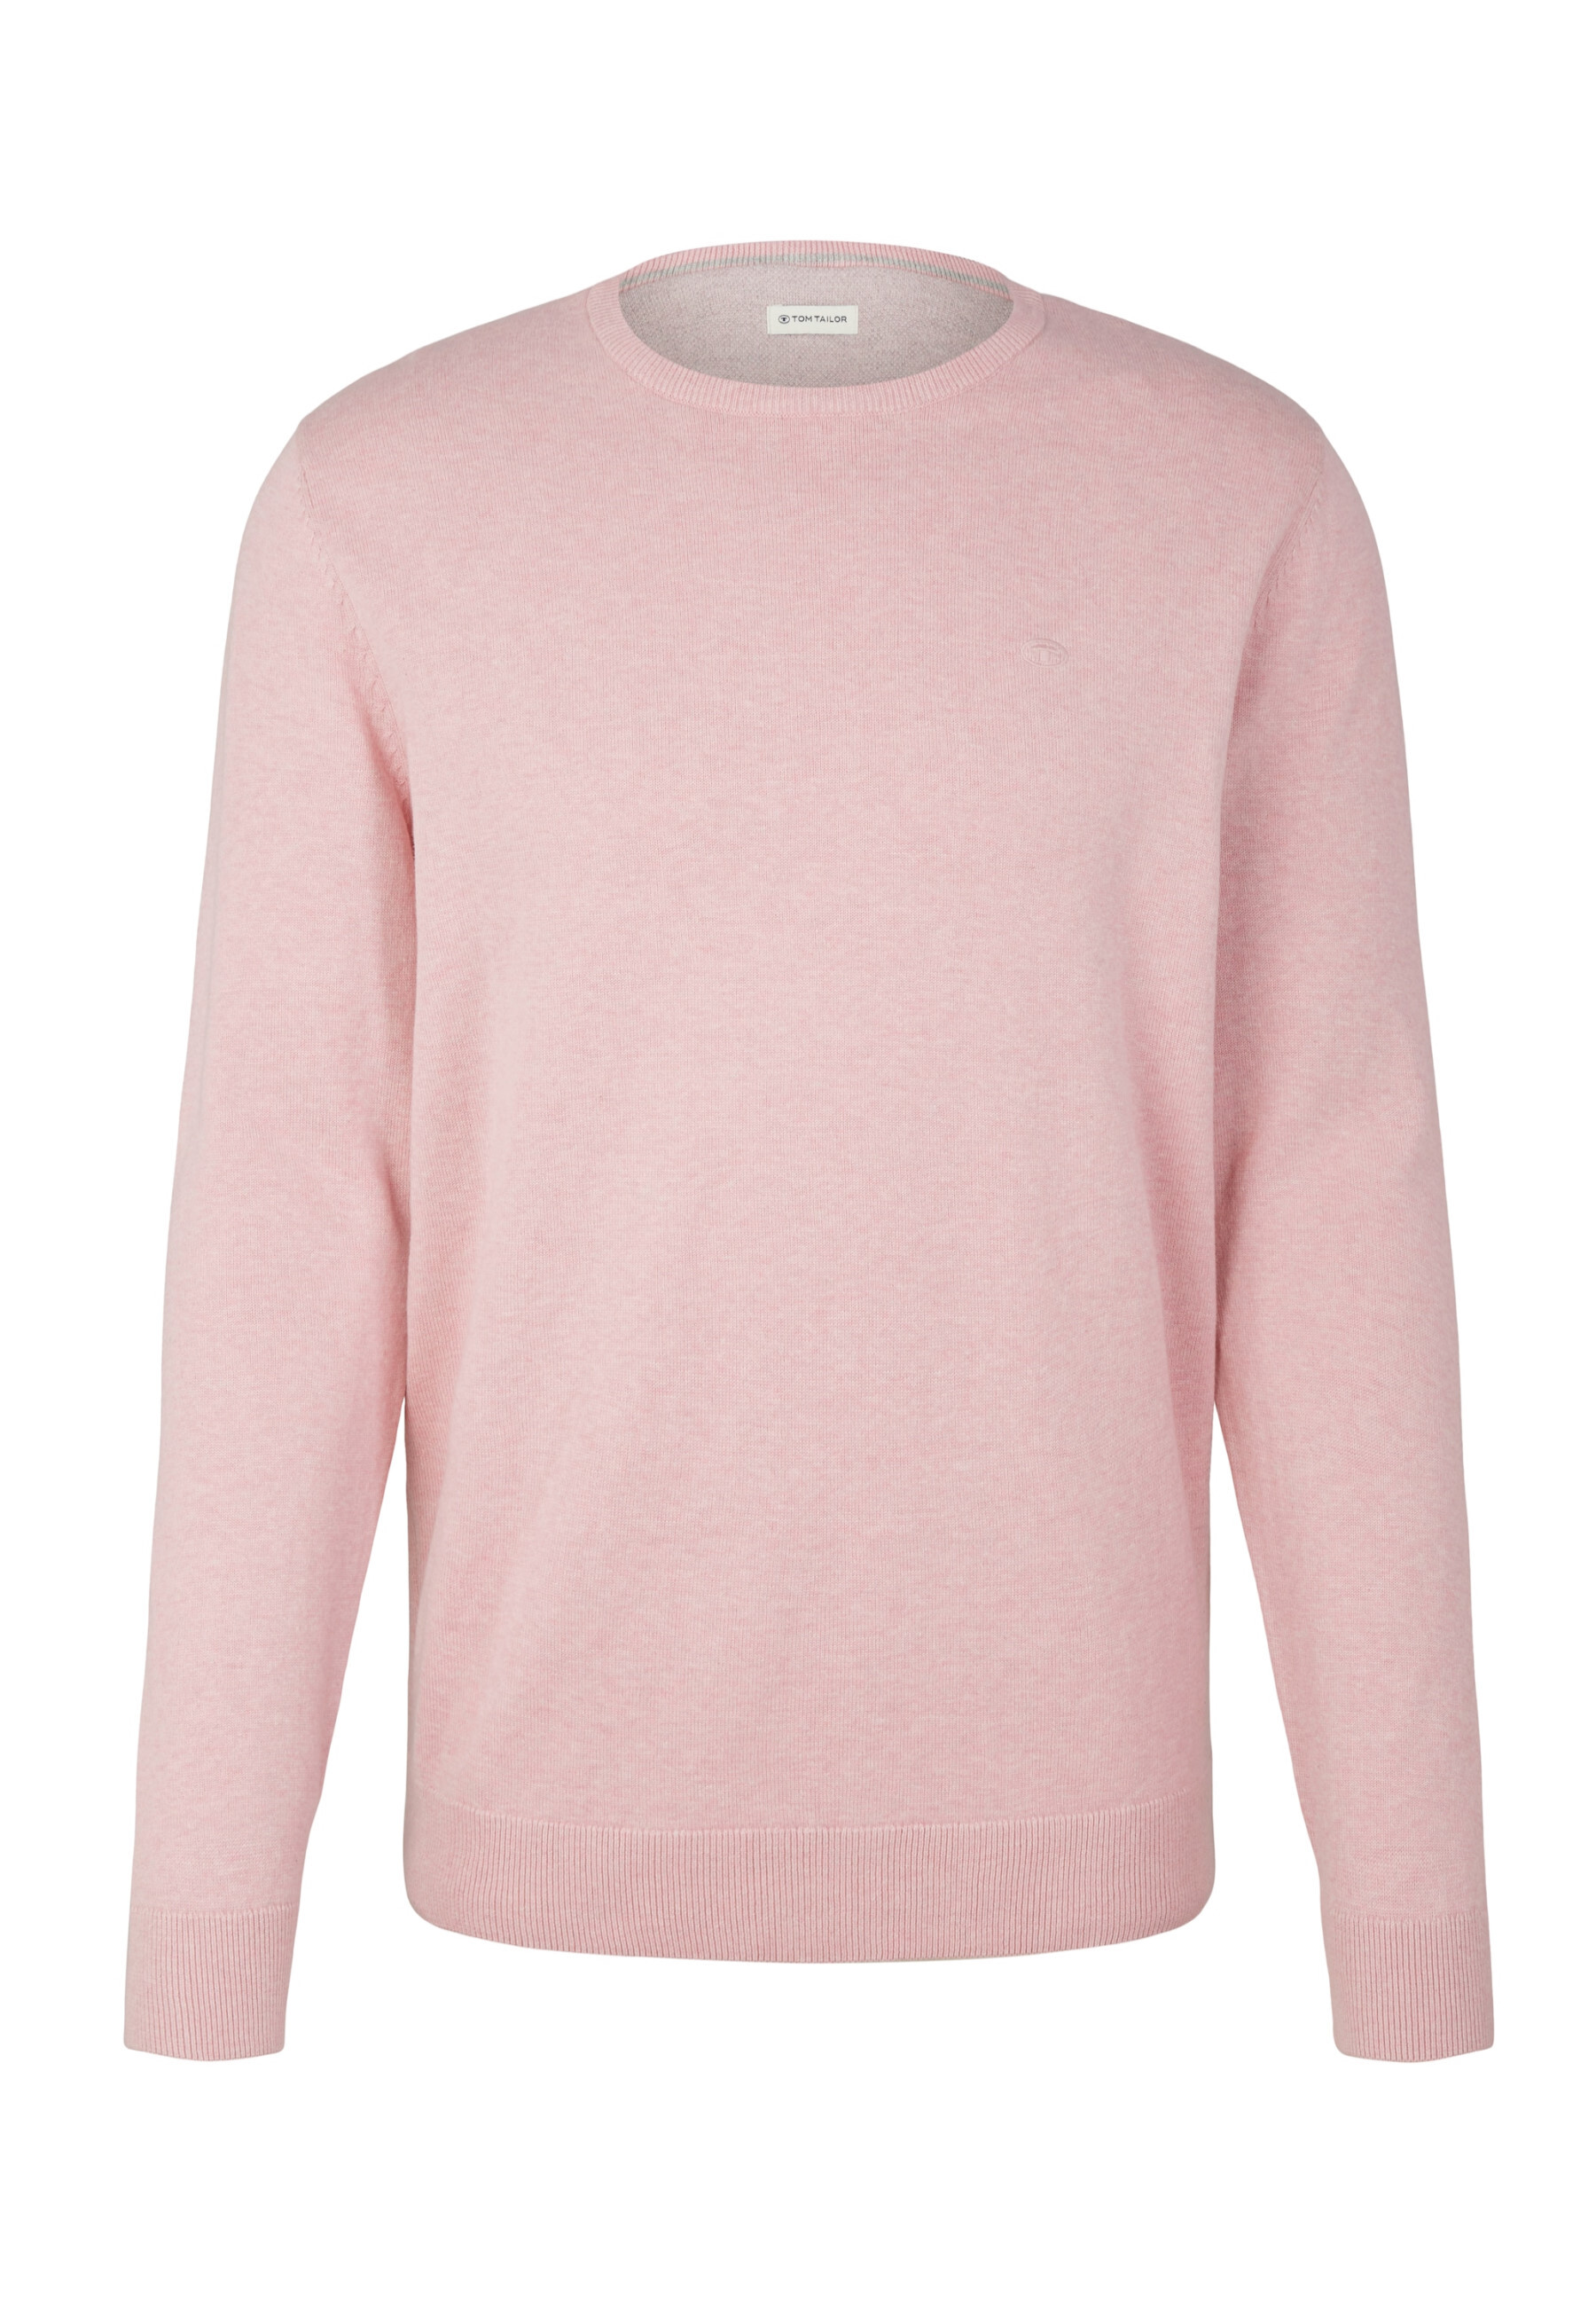 Пуловер Tom Tailor, розовый пуловер tom tailor розовый